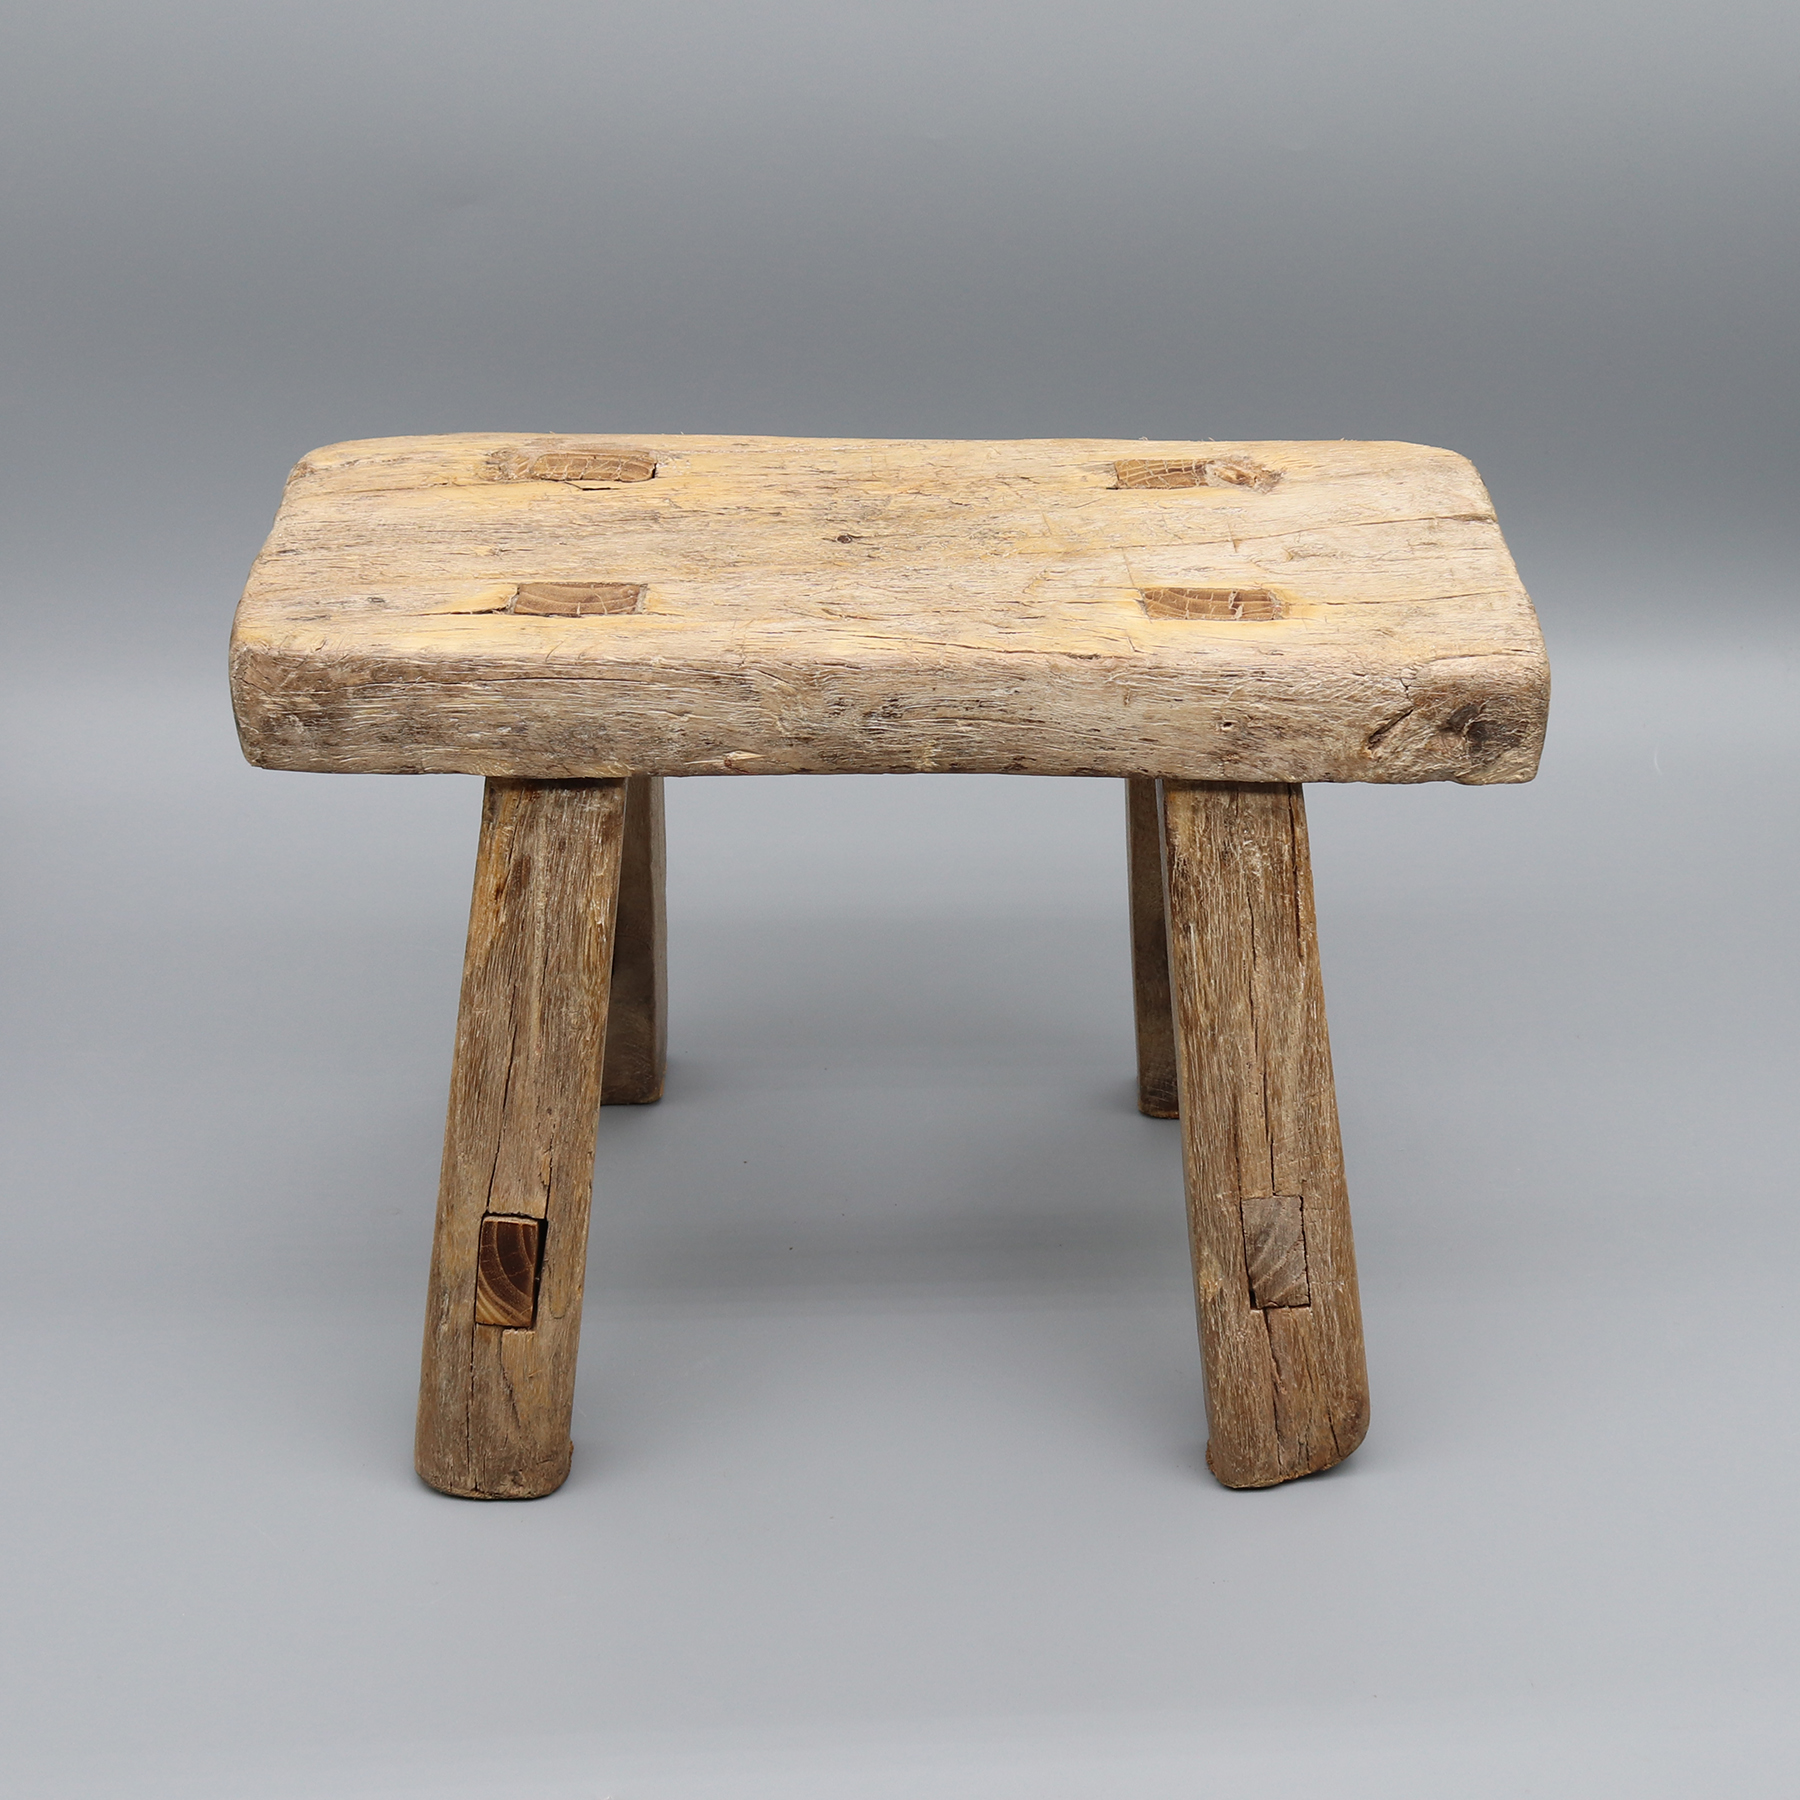 Sgabello antico in legno, snodo a tenone e mortasa, tavolino, supporto piante, legno massello